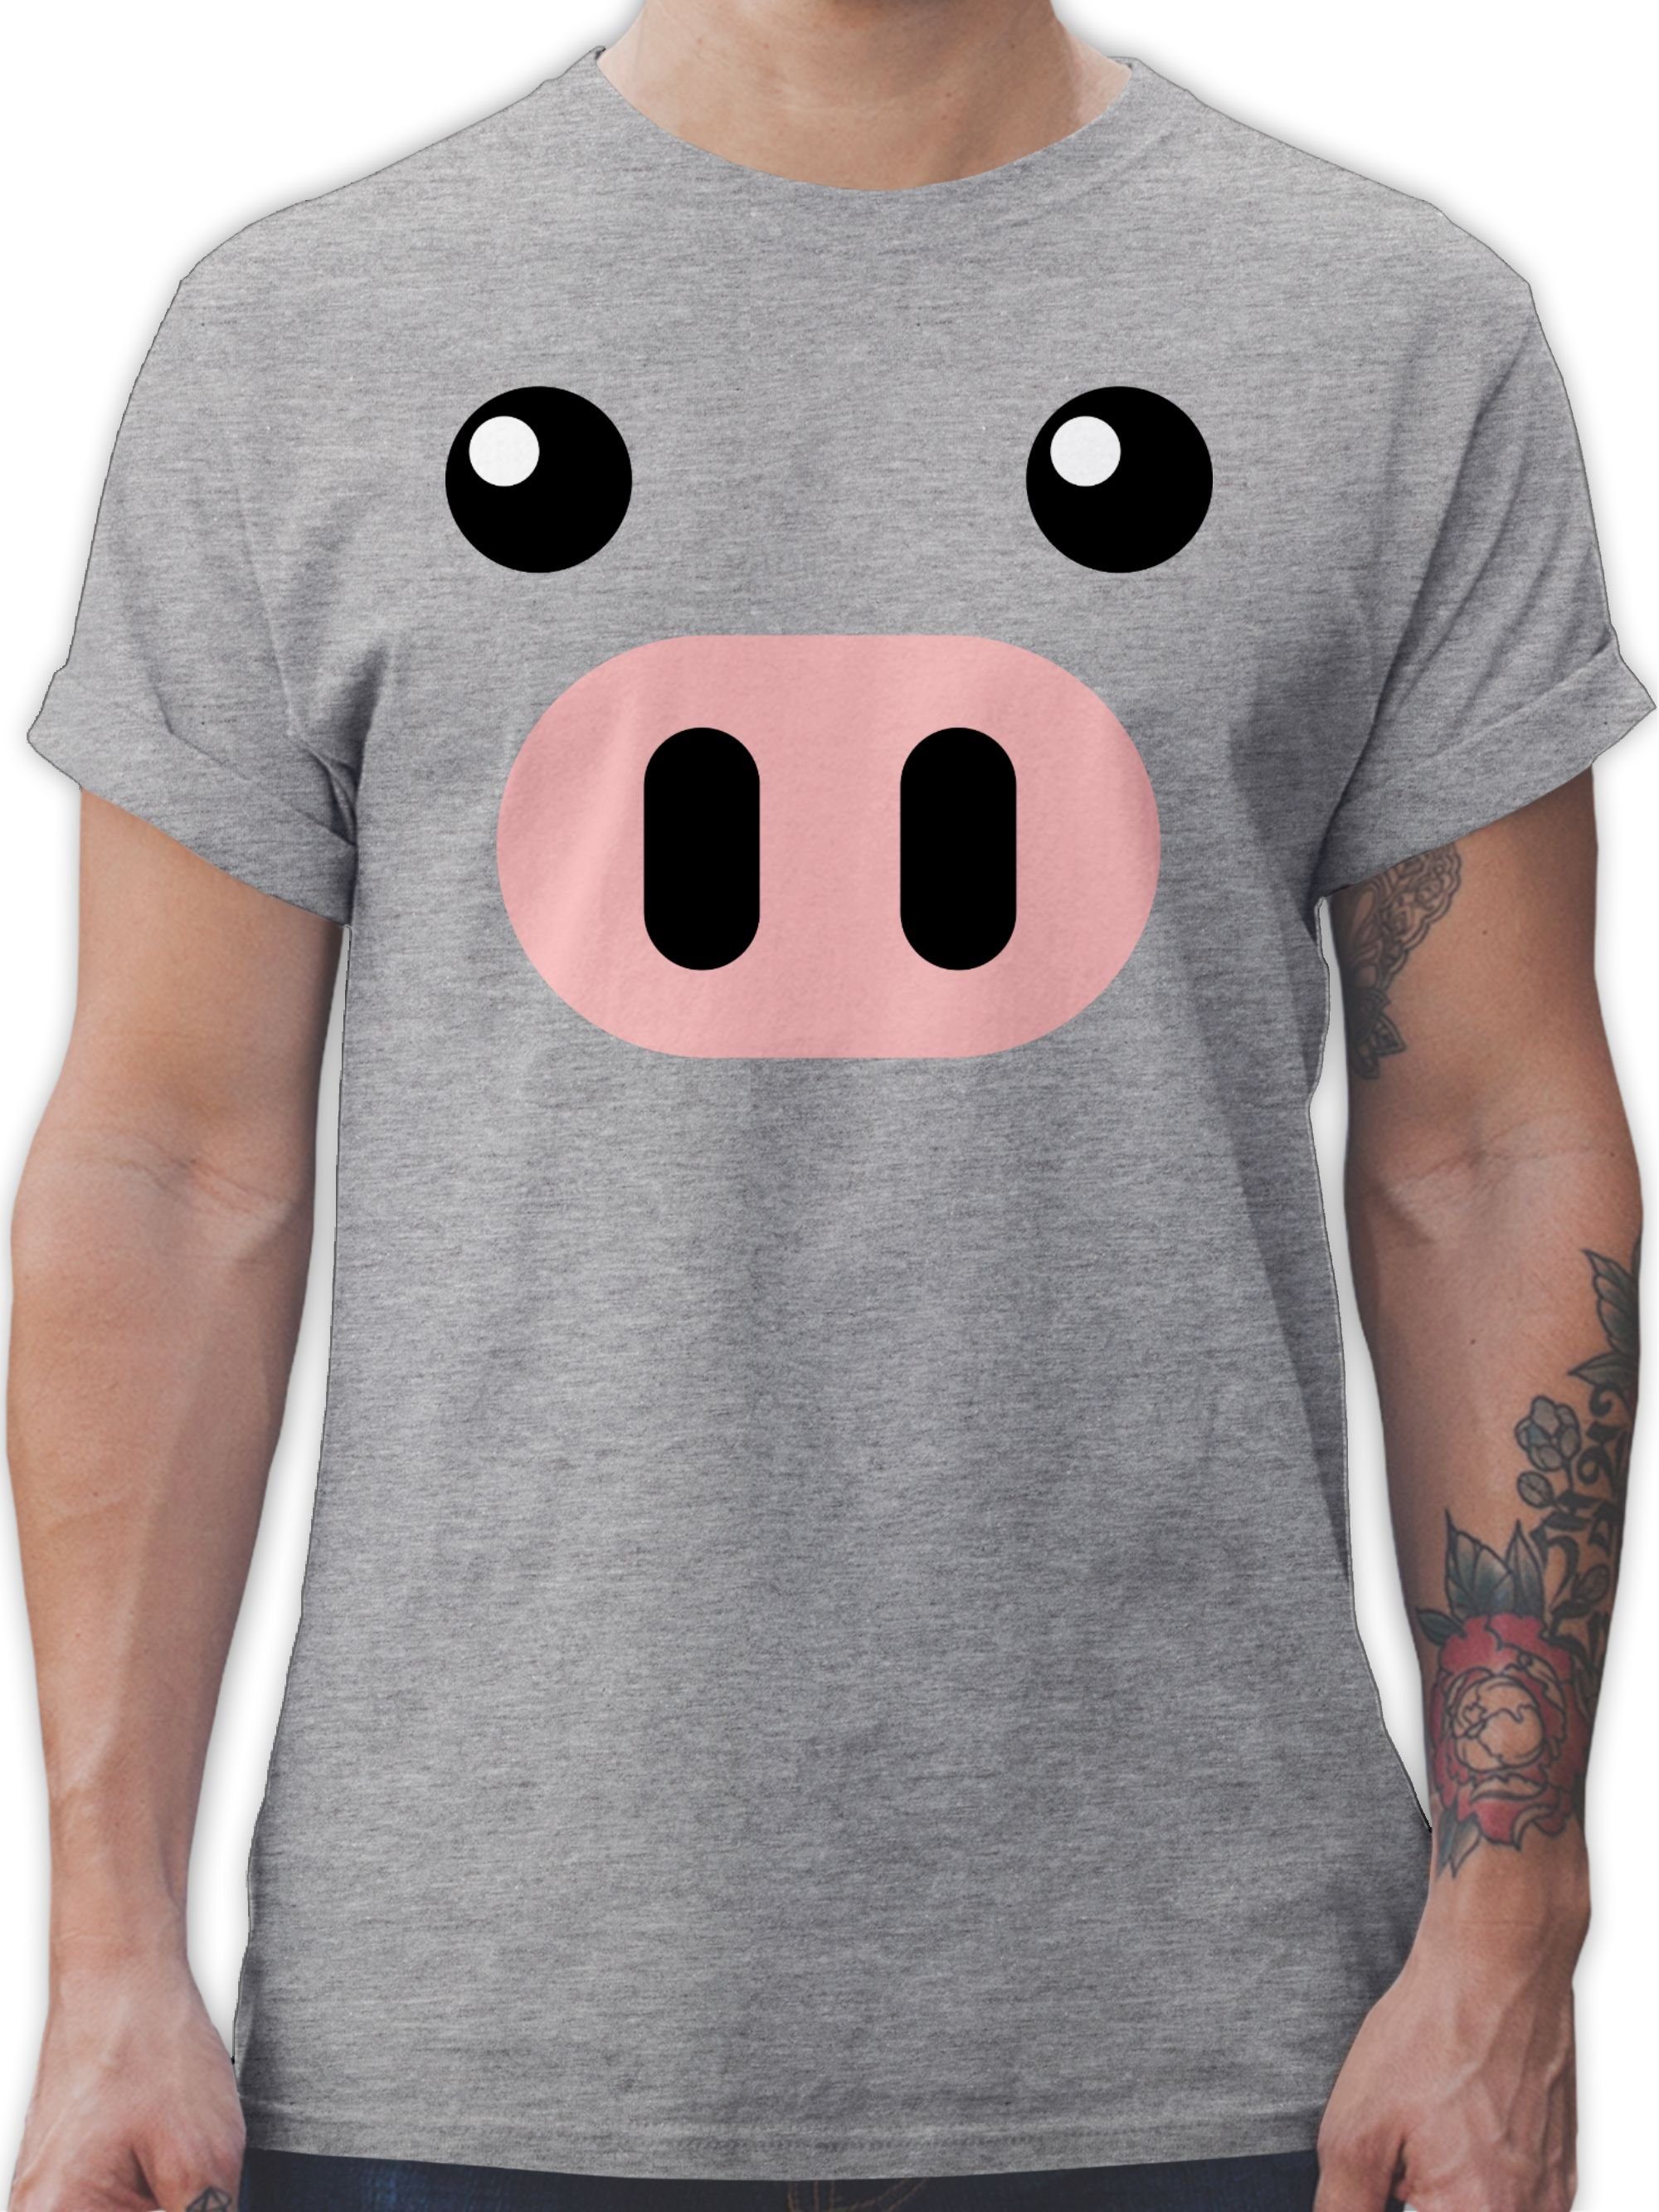 Shirtracer T-Shirt Schwein Kostüm - Schweinchen Schweine Sau Ferkel Pig Schweinebau Karneval Outfit 3 Grau meliert